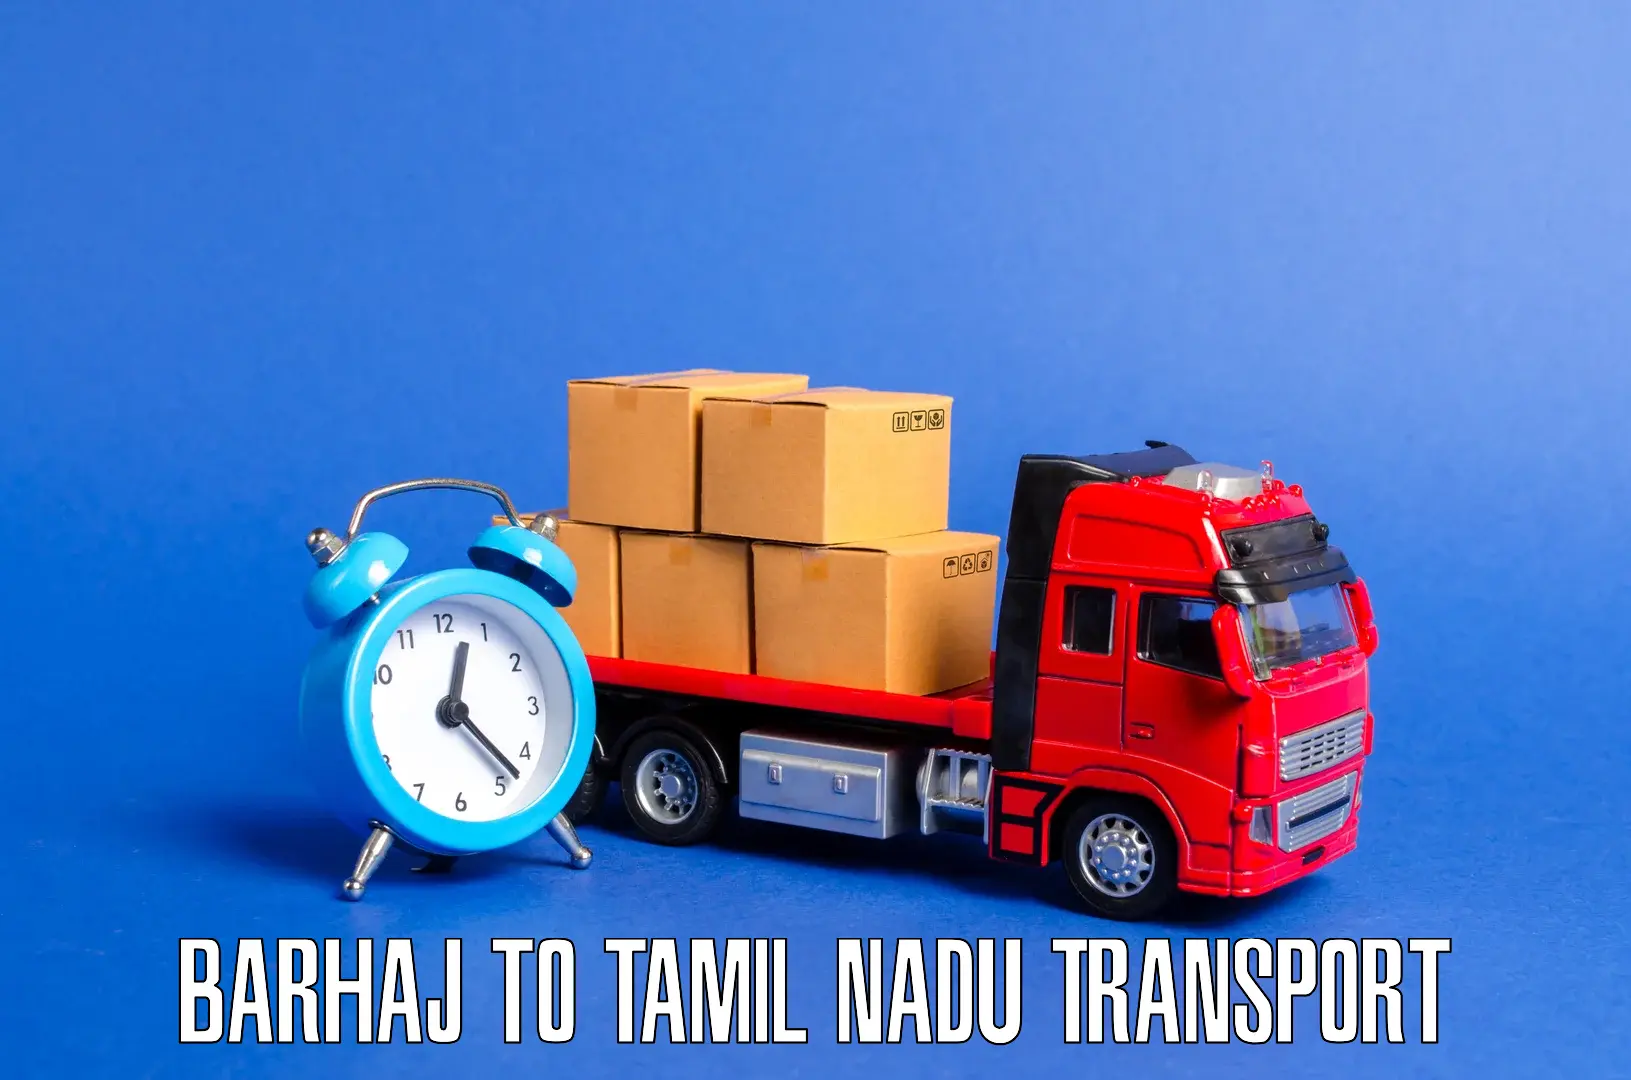 All India transport service Barhaj to Tiruchengodu